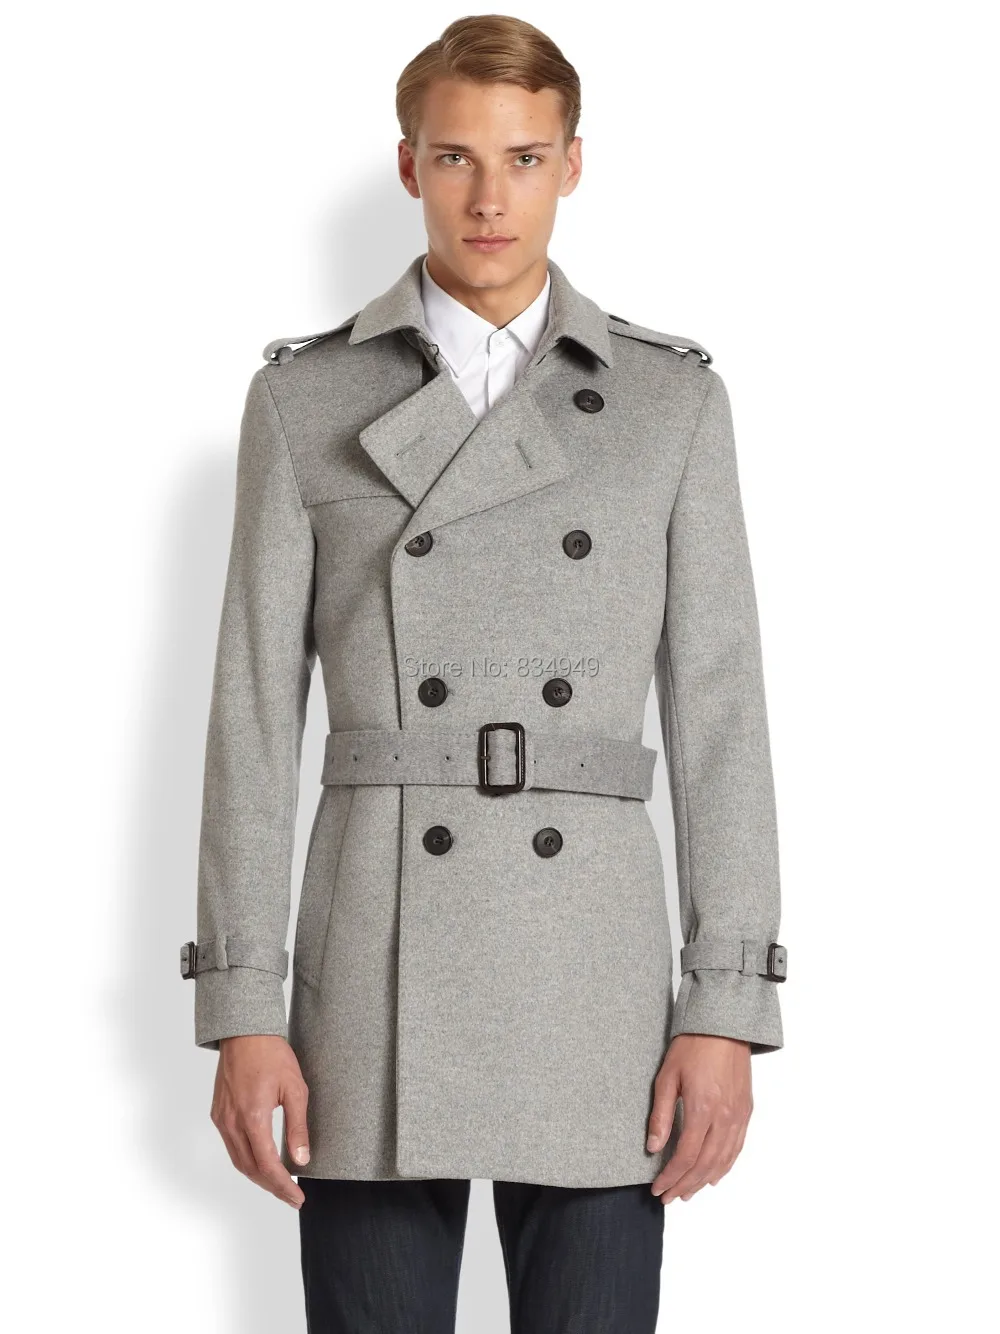 Aliexpress.com : Buy Custom Made Trench Coat Men, Winter Overcoat Men ...